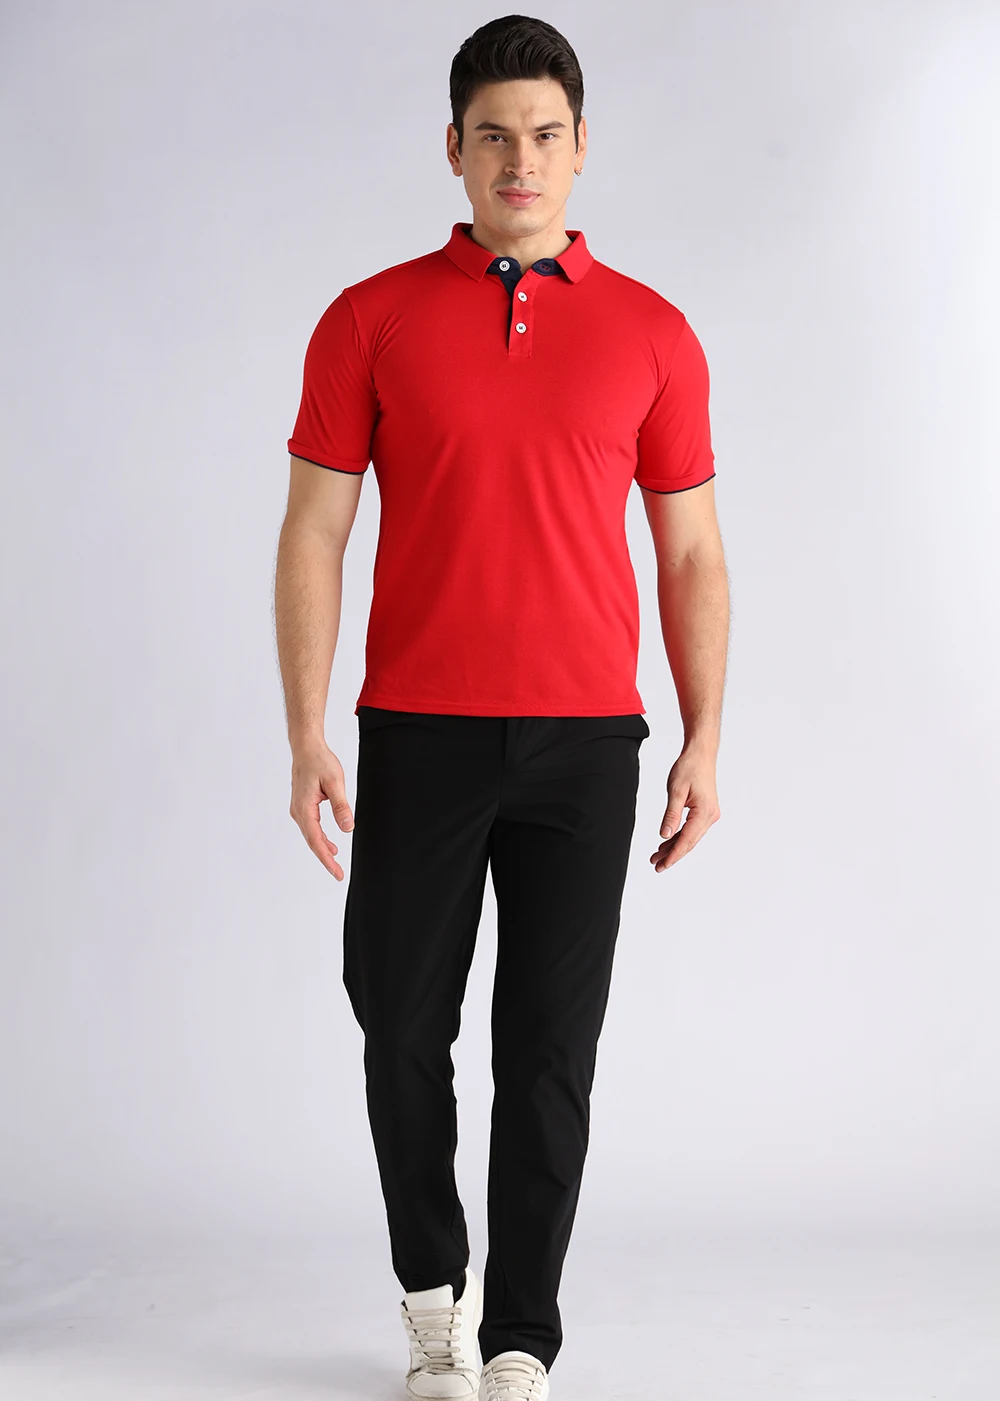 Custom Design Your Own Brand Polo Shirt Short Sleeve Men's Polyester ...